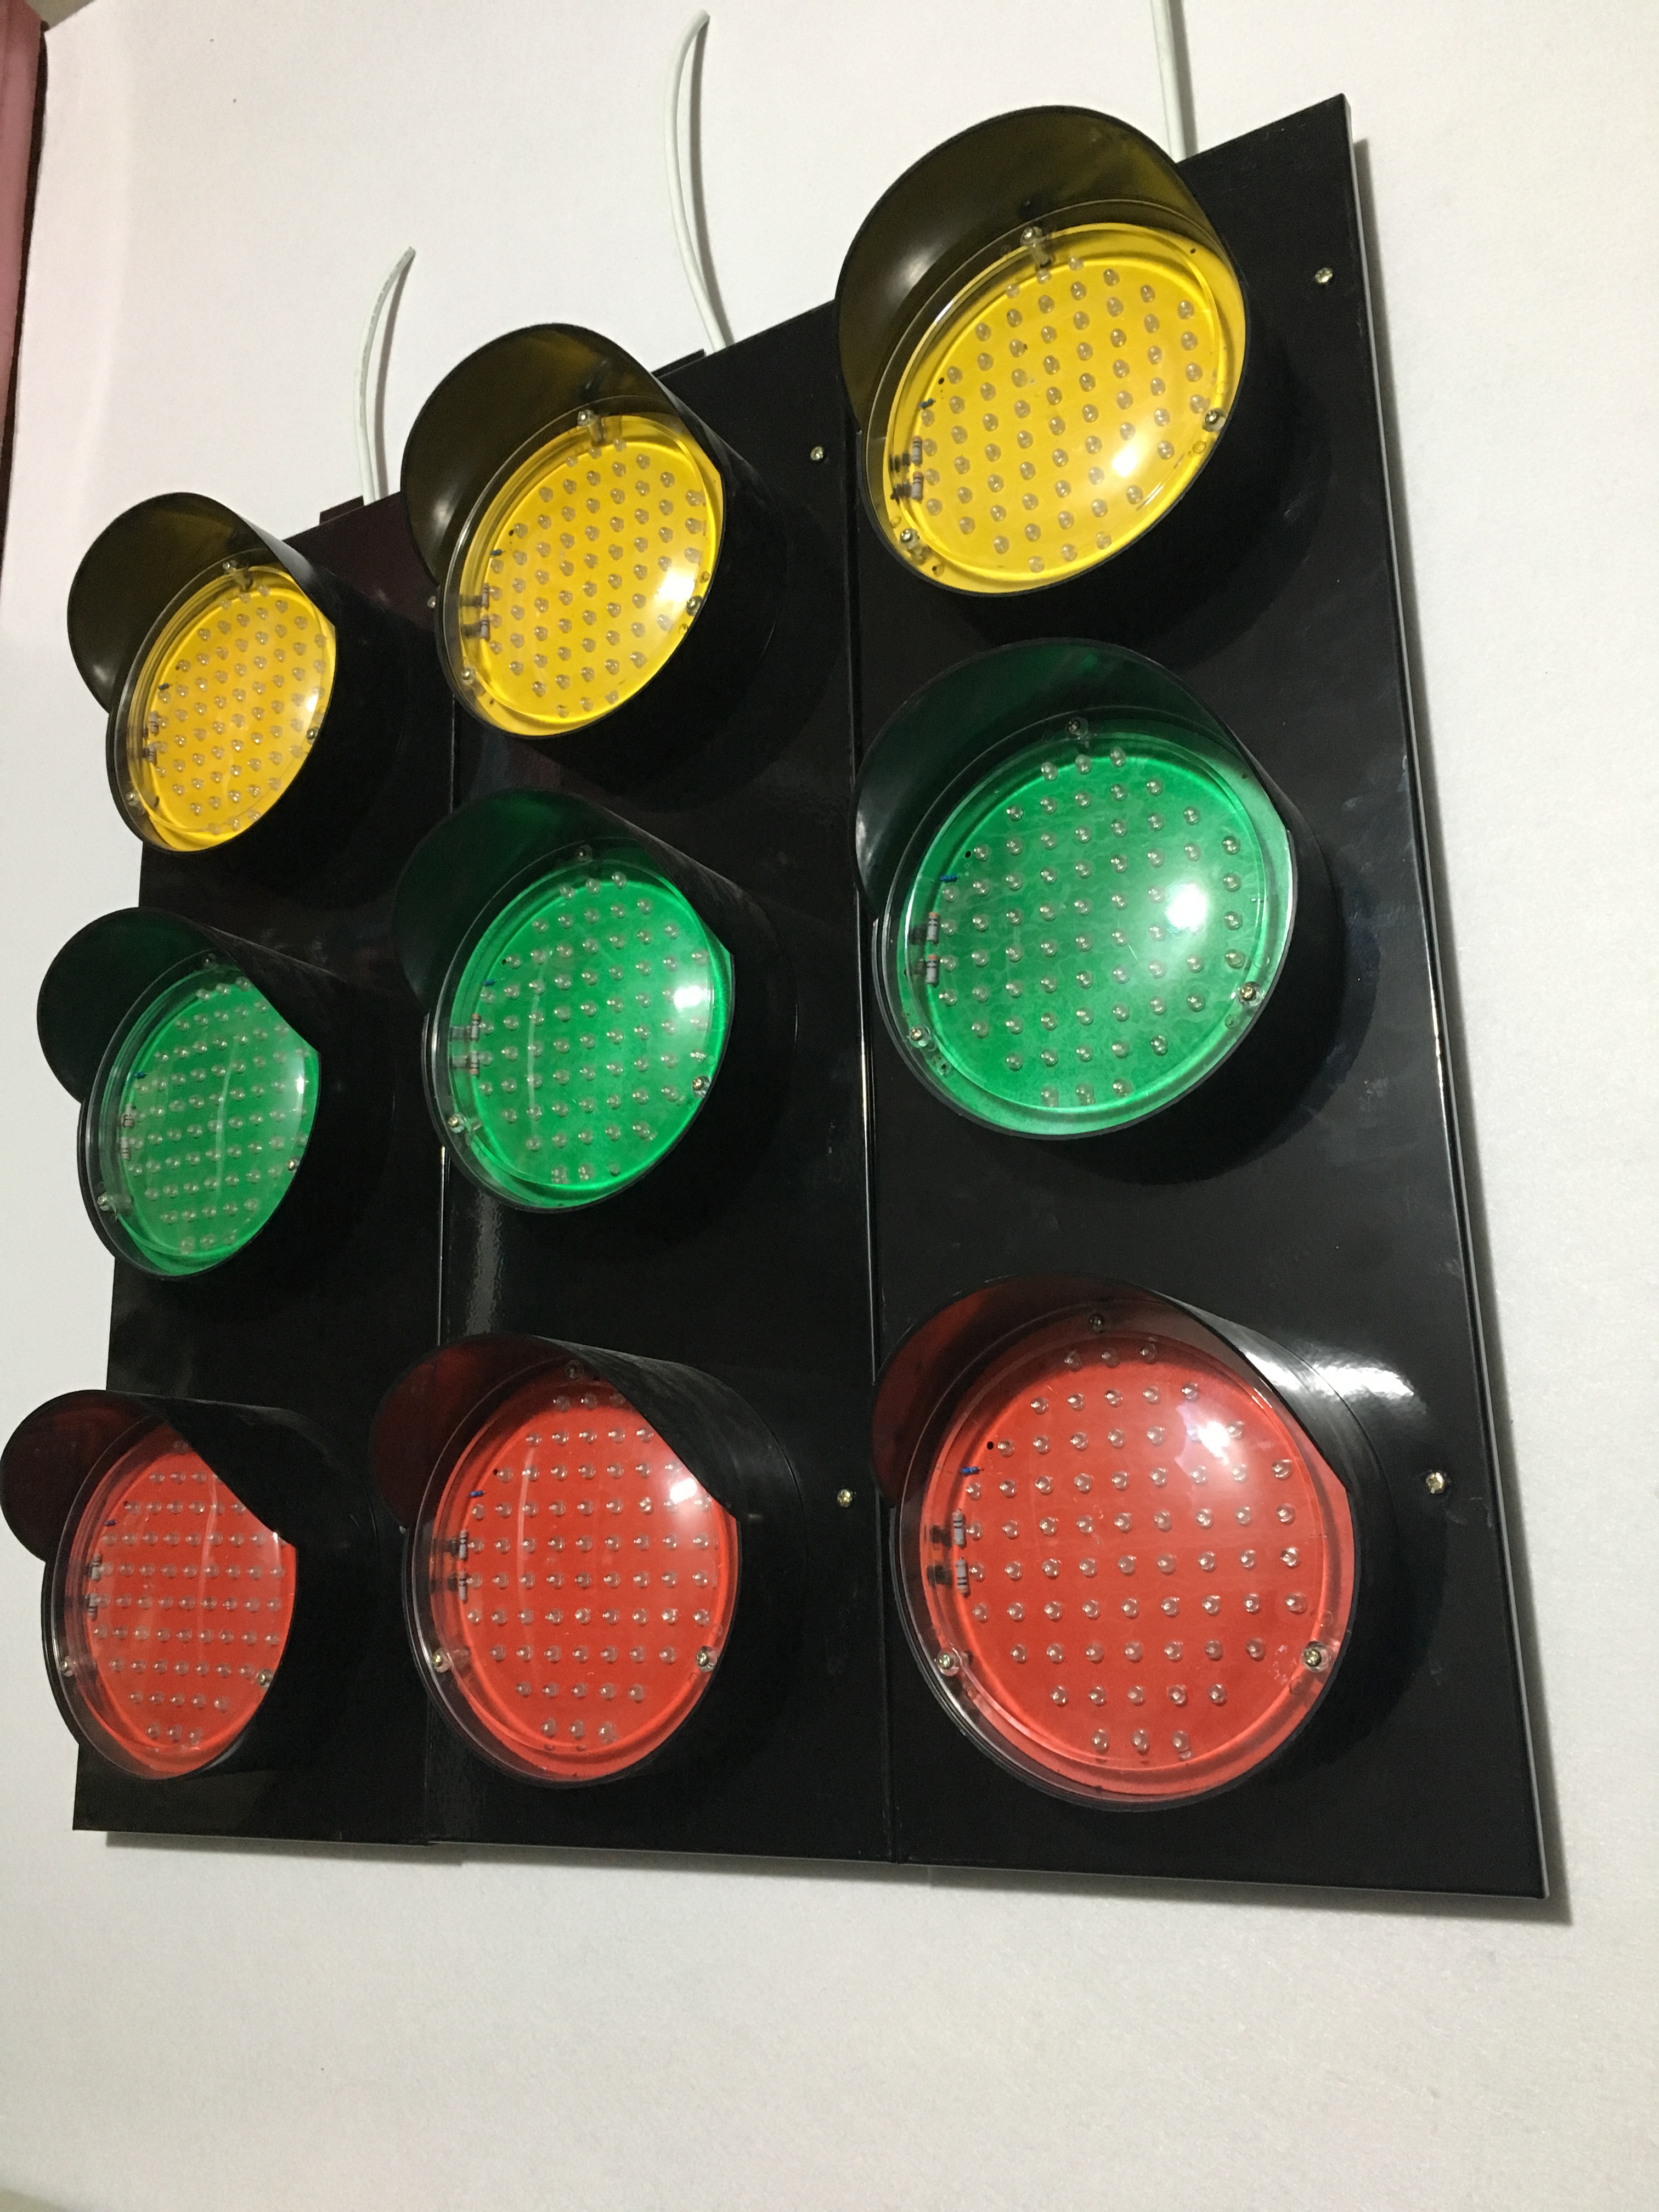 滑触线电源指示灯ABC-HCX-150钢厂用指示灯黄、绿、红 滑触线指示灯,滑线指示灯,行车信号灯,LED滑触线指示灯,天车指示灯